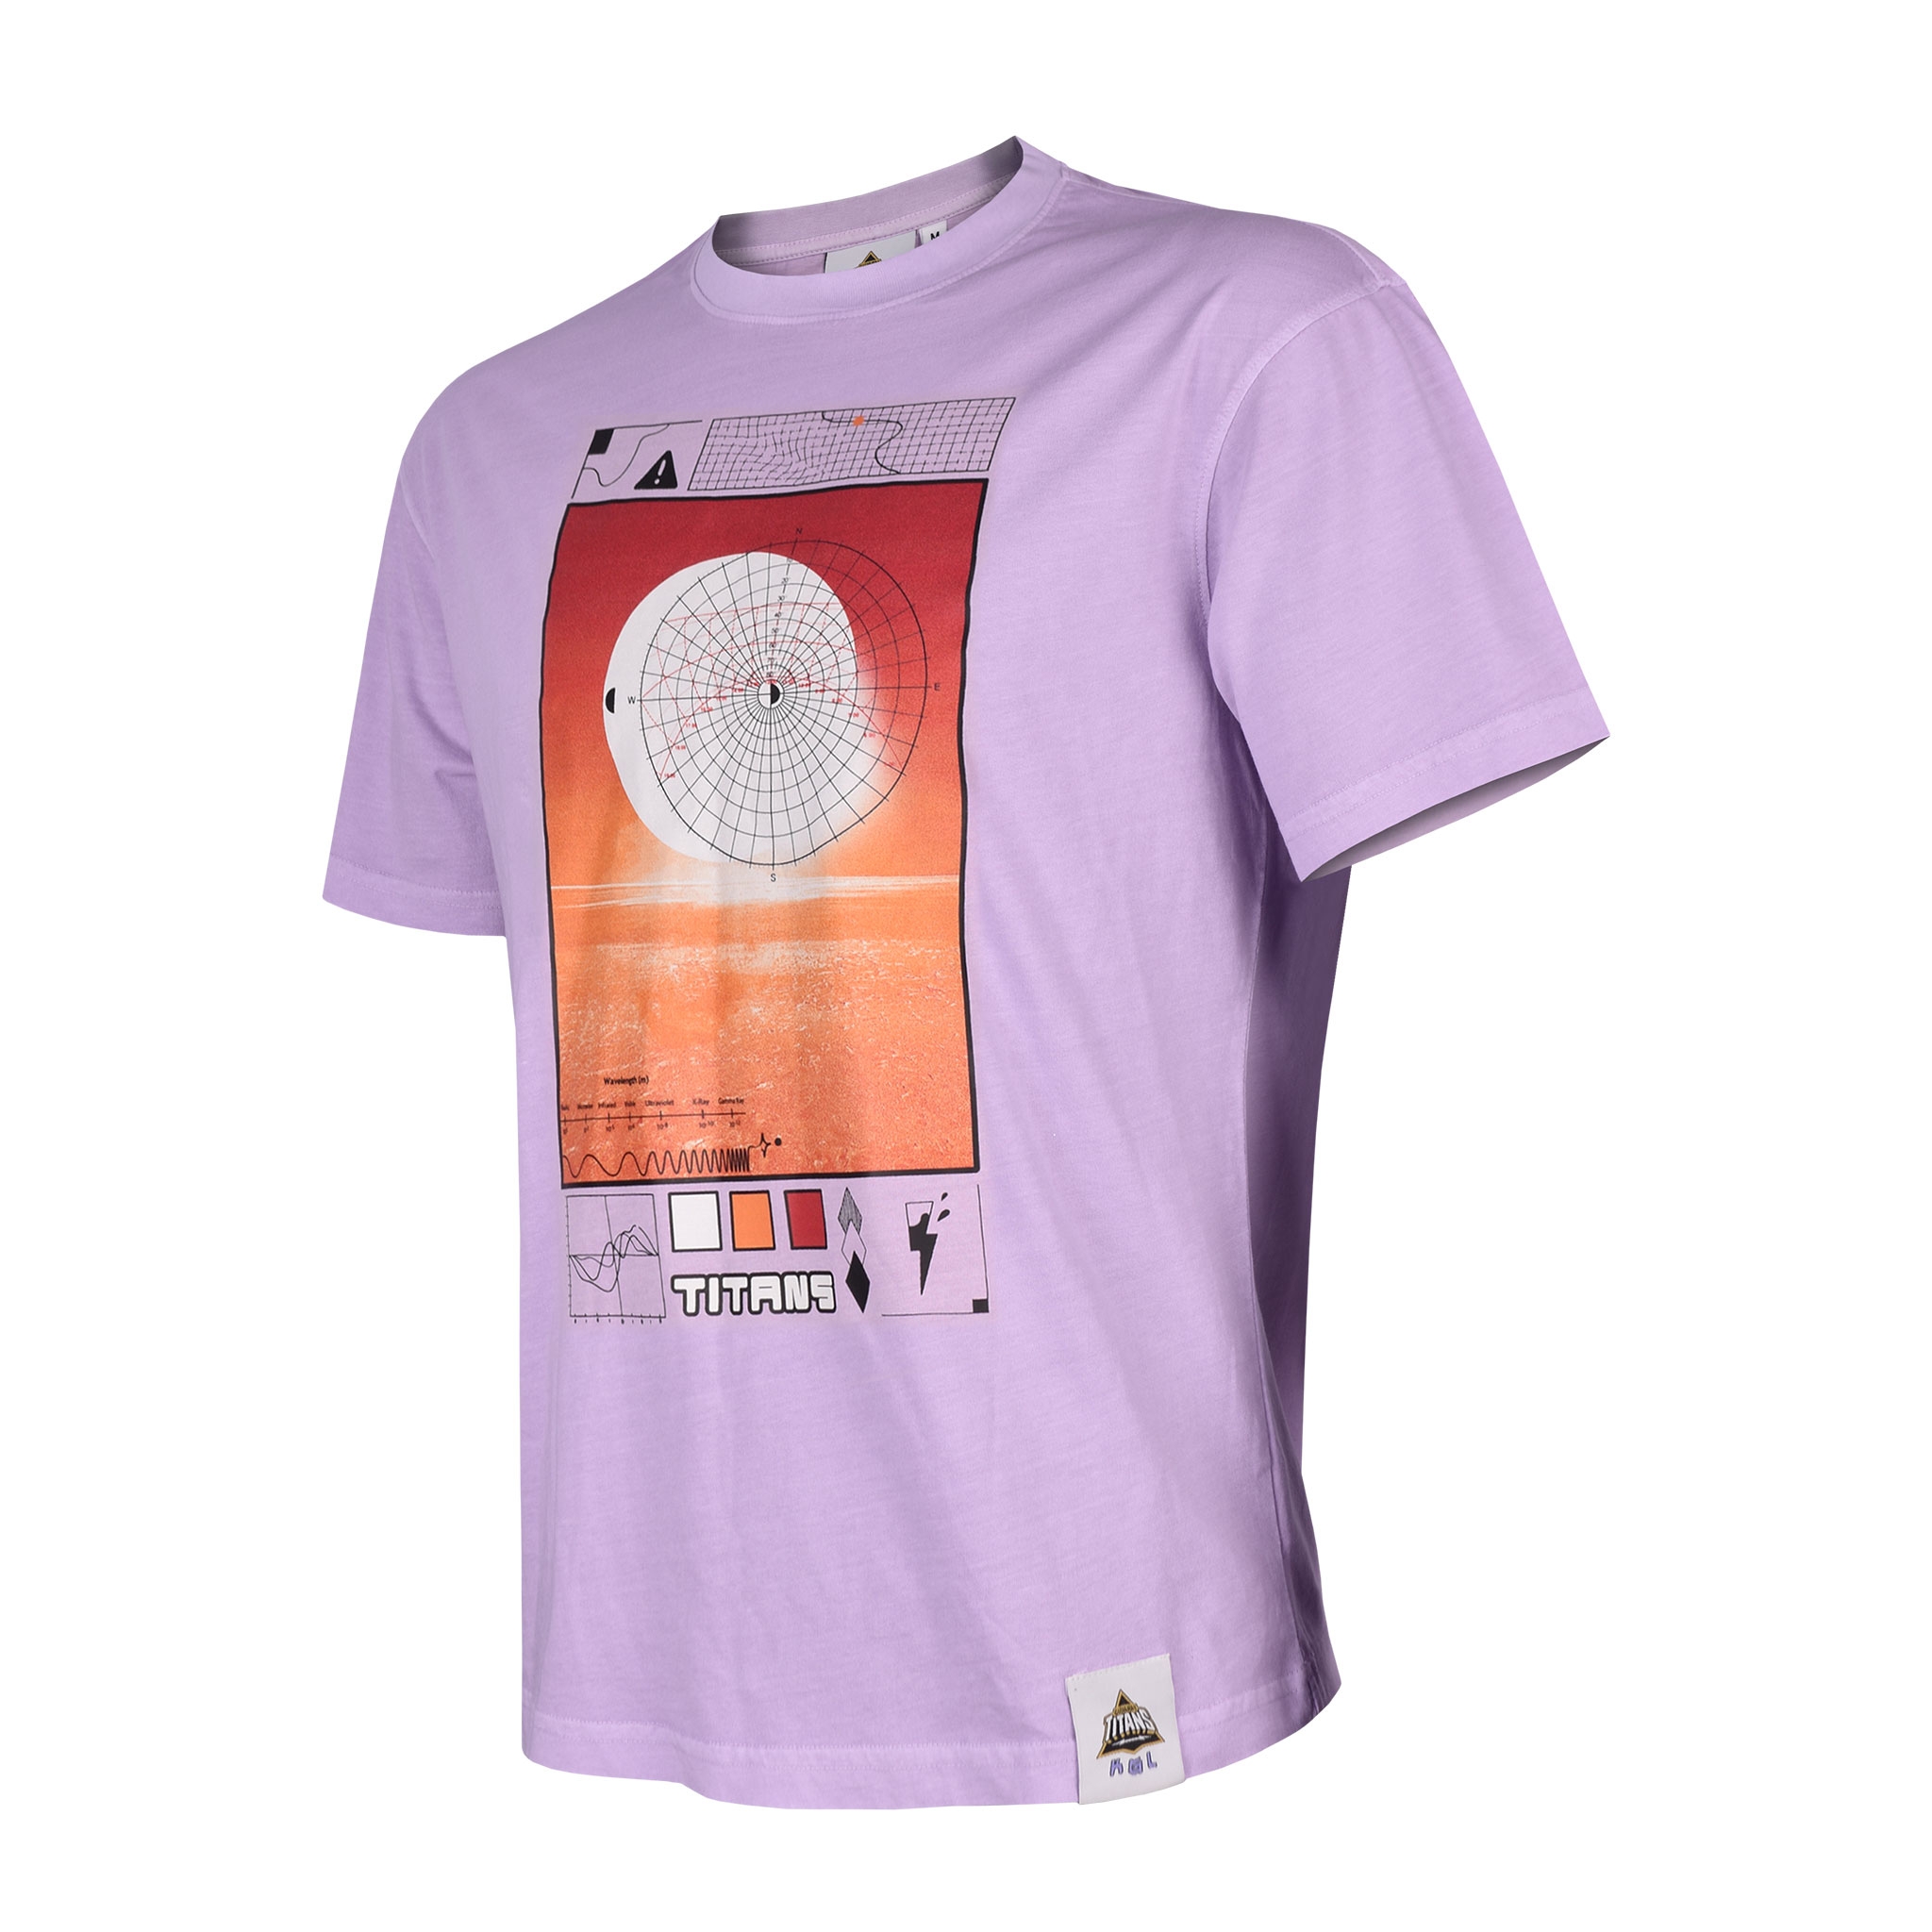 GTxKGL Divergent Wavelength Lilac T-shirt